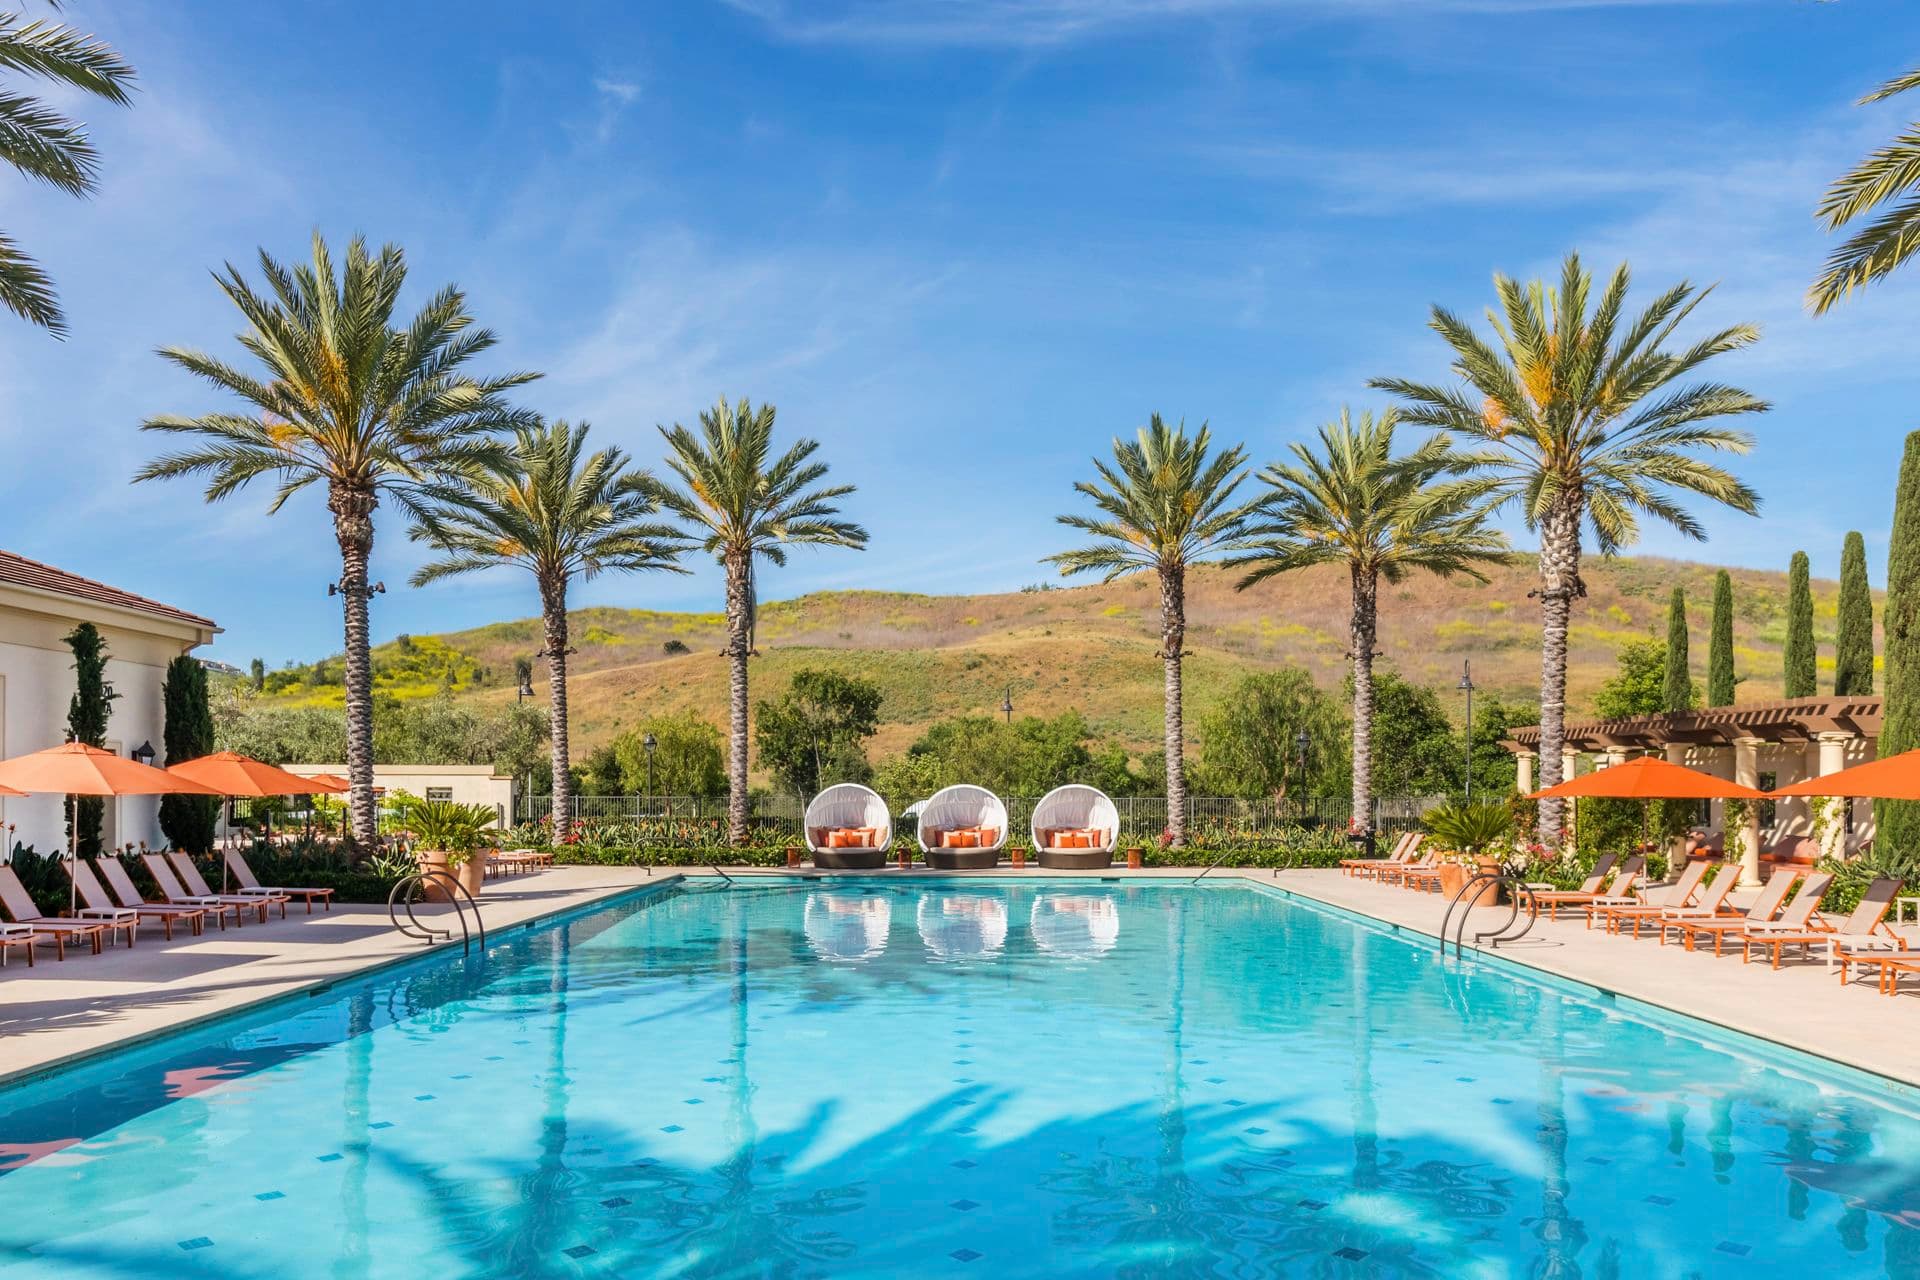 Exterior pool view at Los Olivos at Irvine Spectrum Apartment Homes in Irvine, CA.